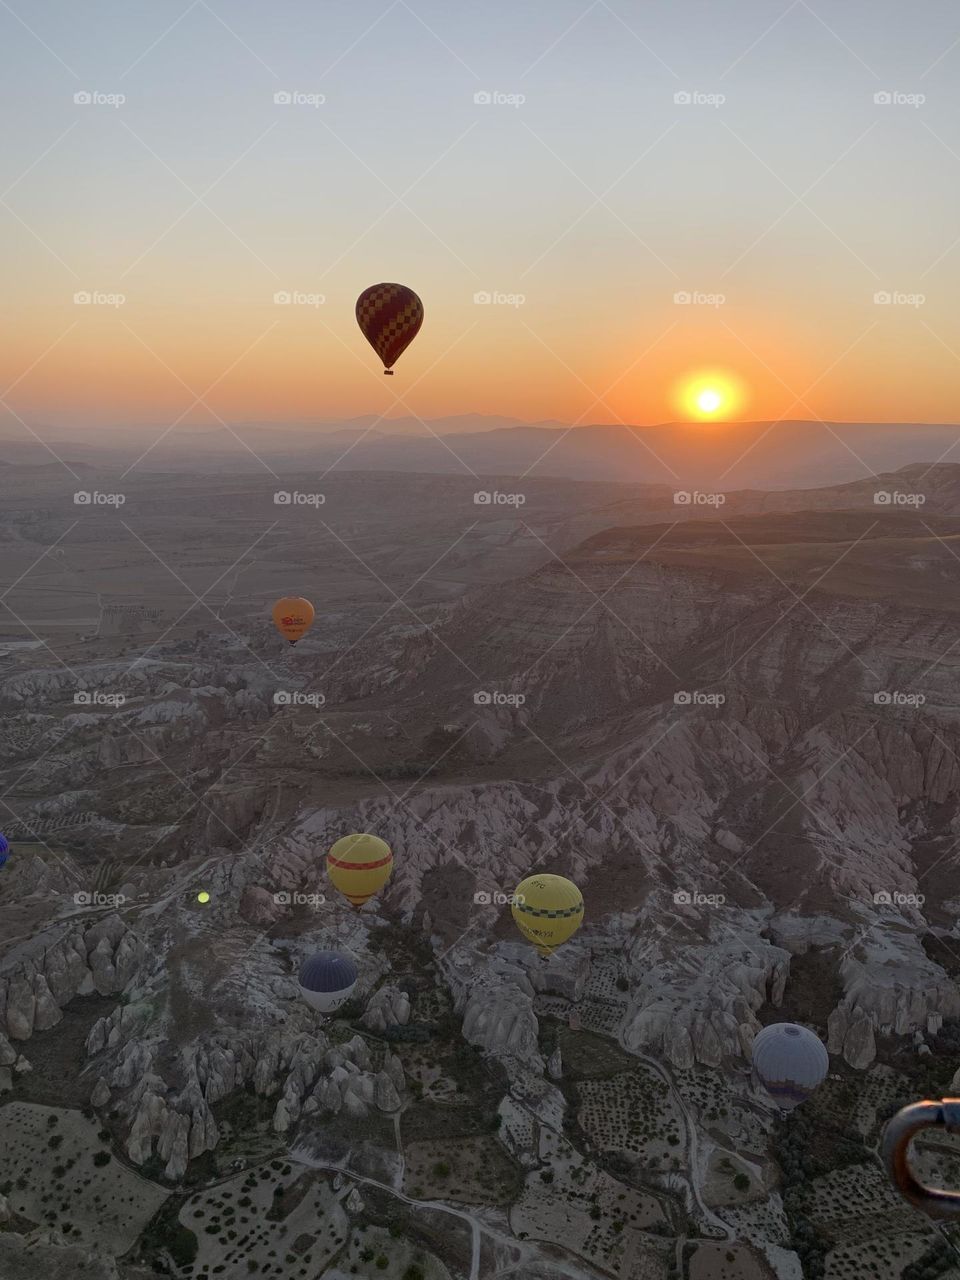 Mountains of Cappadocia sunrise